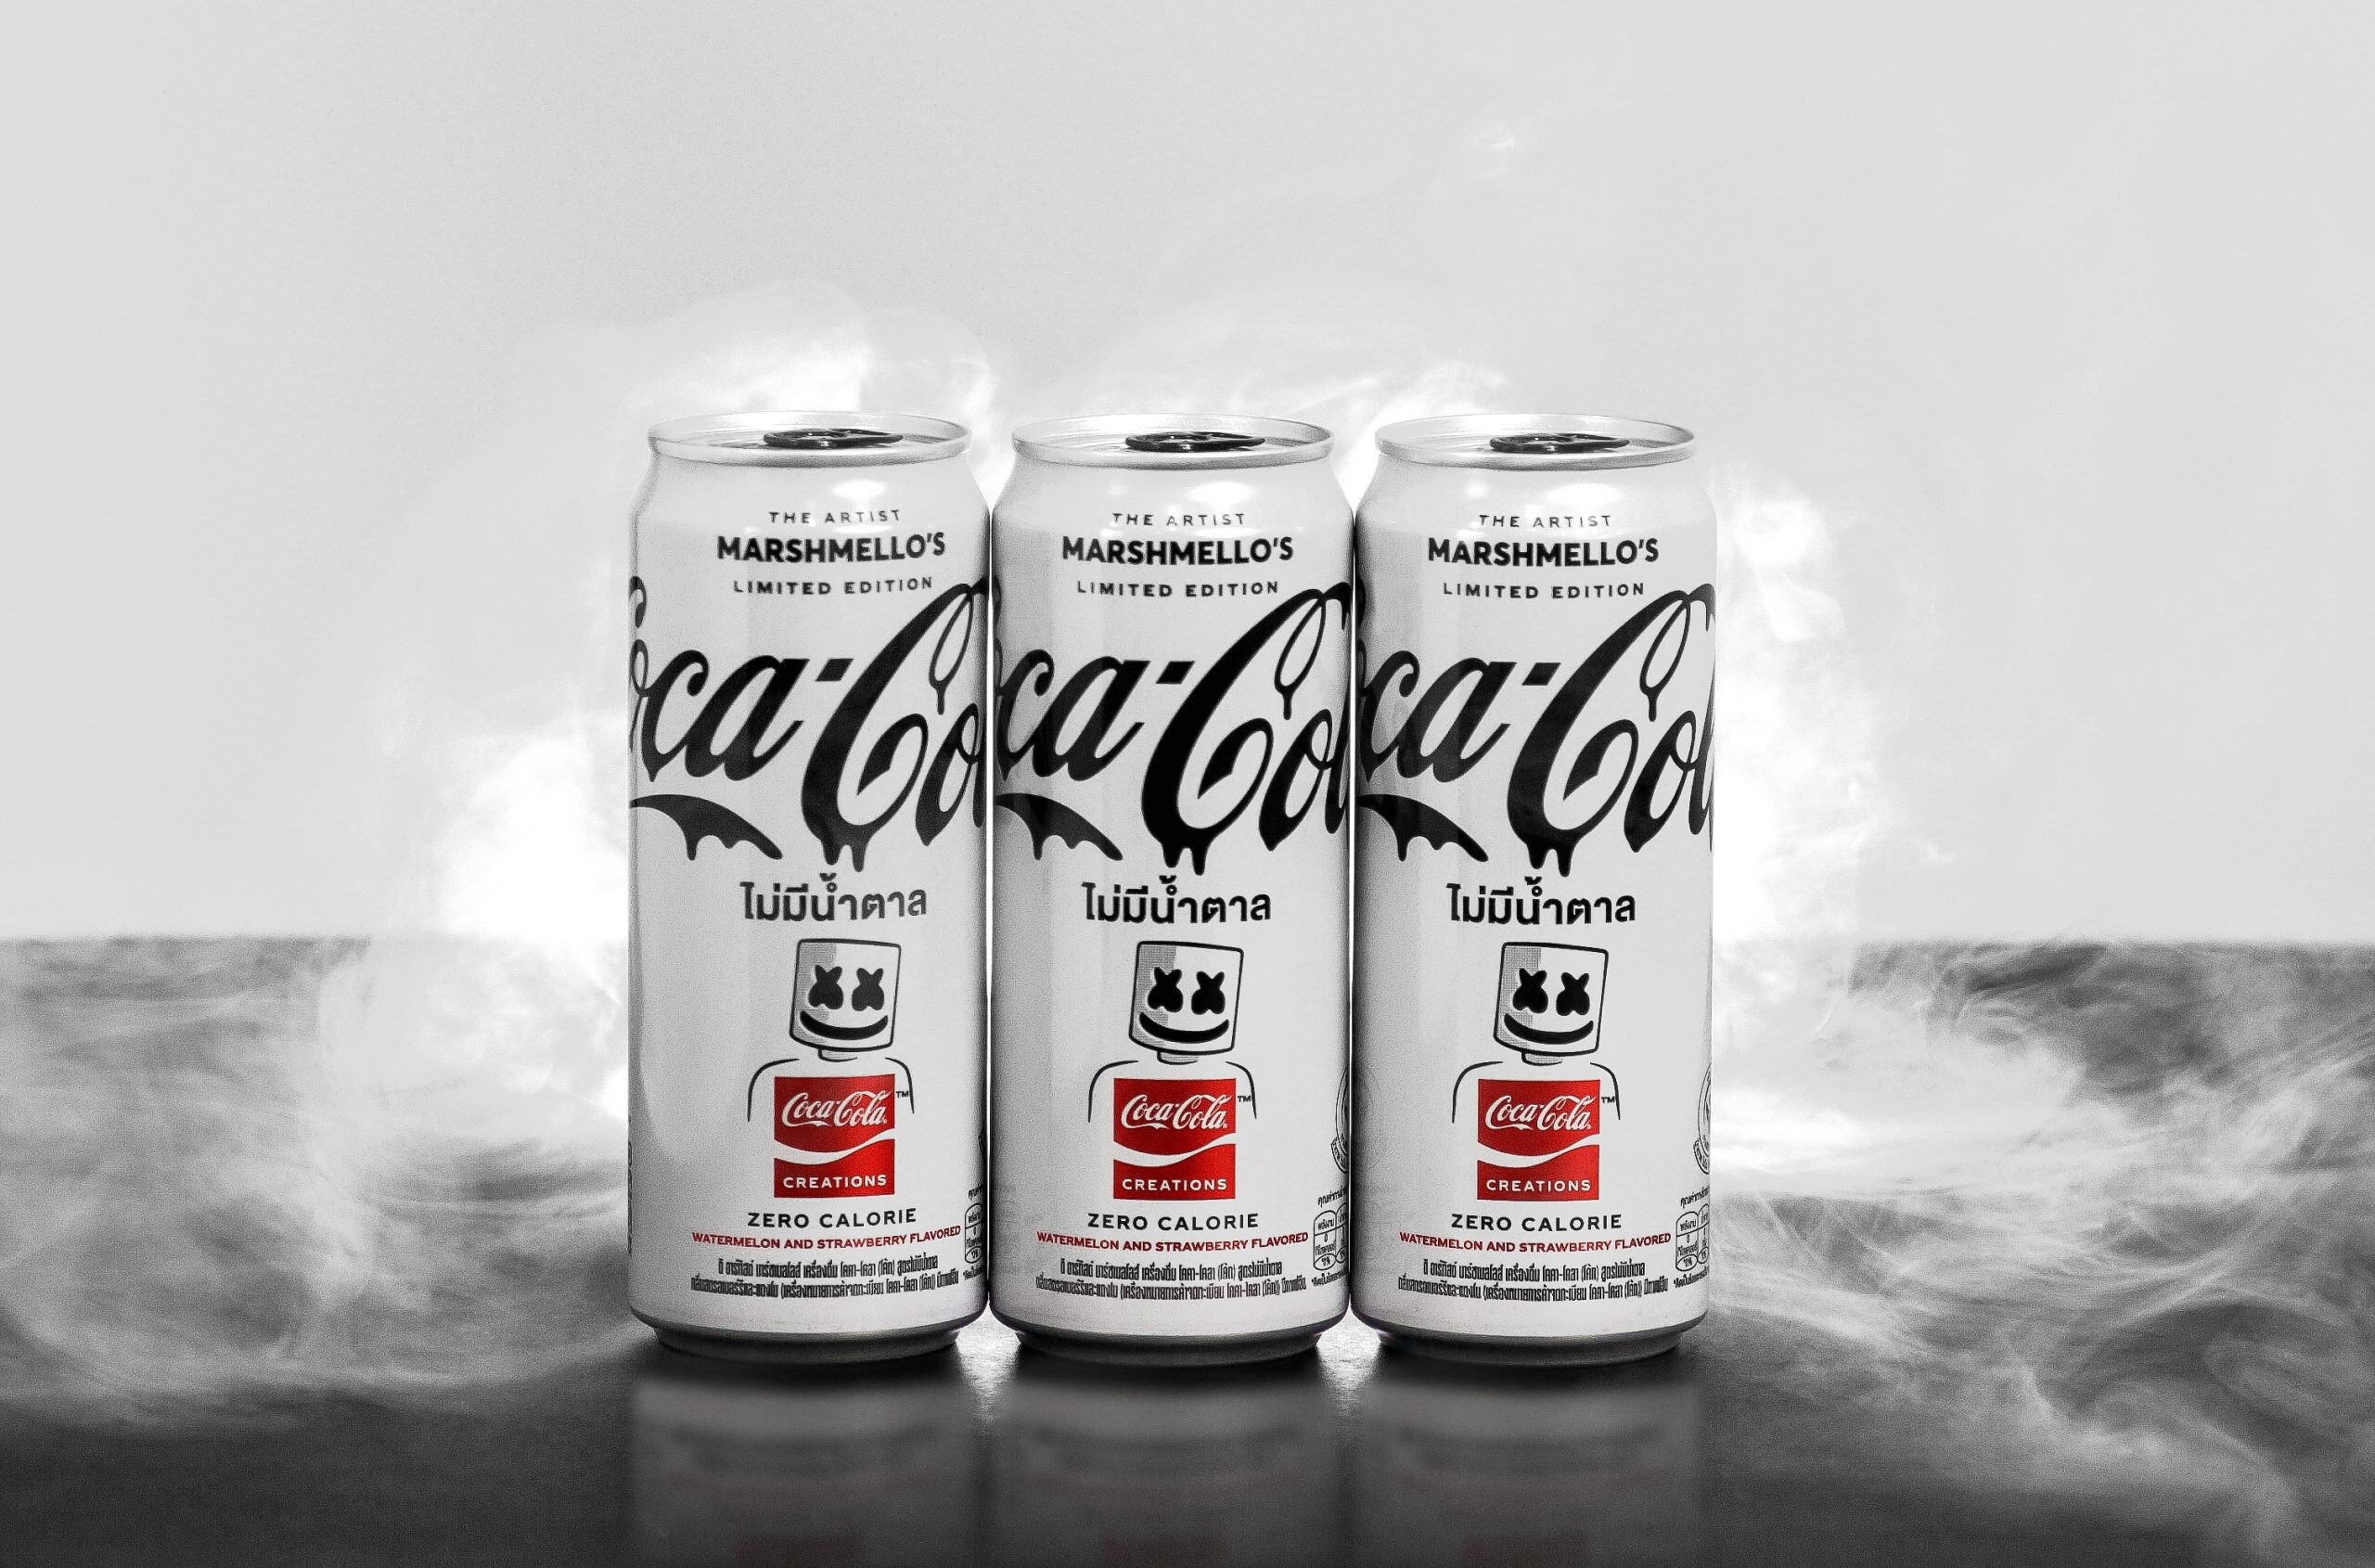 "โคคา-โคล่า" ผนึกกำลัง "Marshmello" ศิลปินระดับโลก เปิดตัวผลิตภัณฑ์รสชาติใหม่แบบลิมิเต็ด ภายใต้แพลตฟอร์ม Coca-Cola Creations(TM)